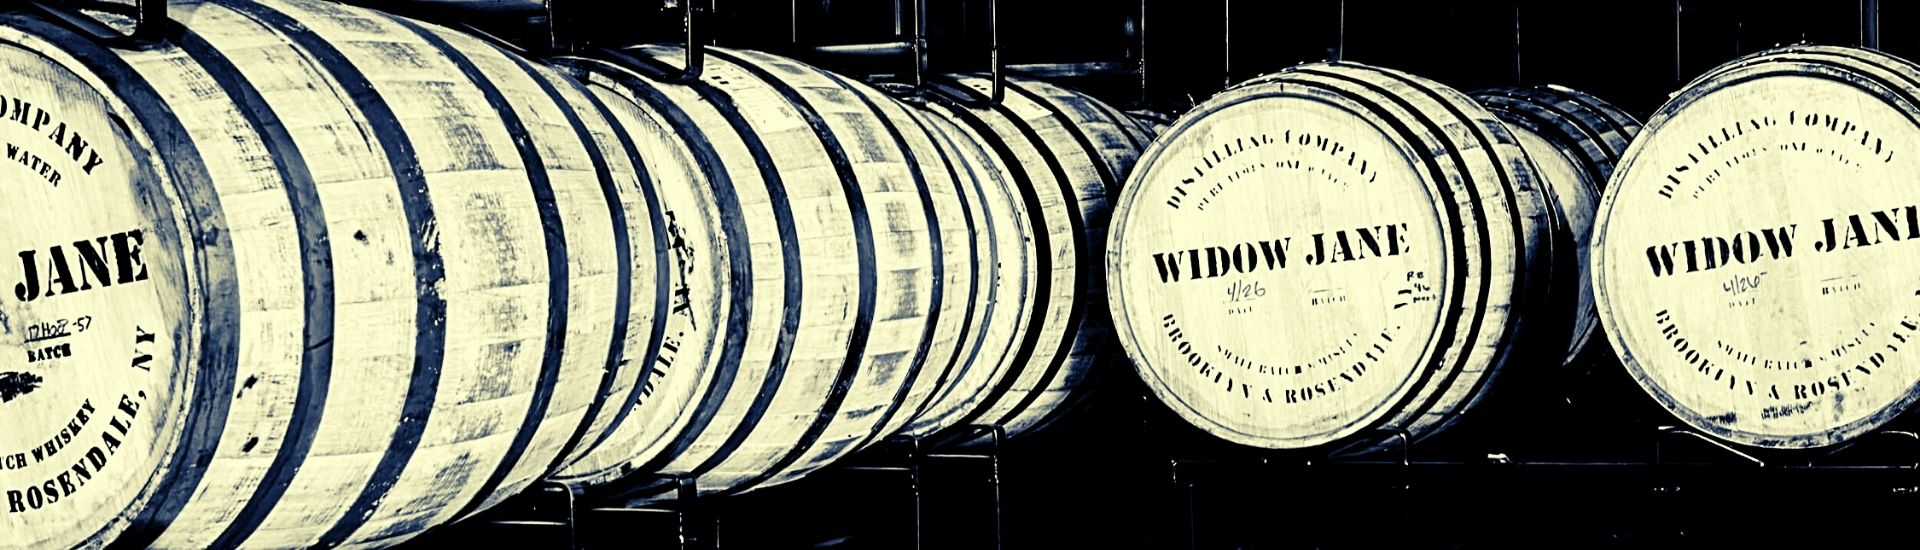 widow jane bourbon barrels